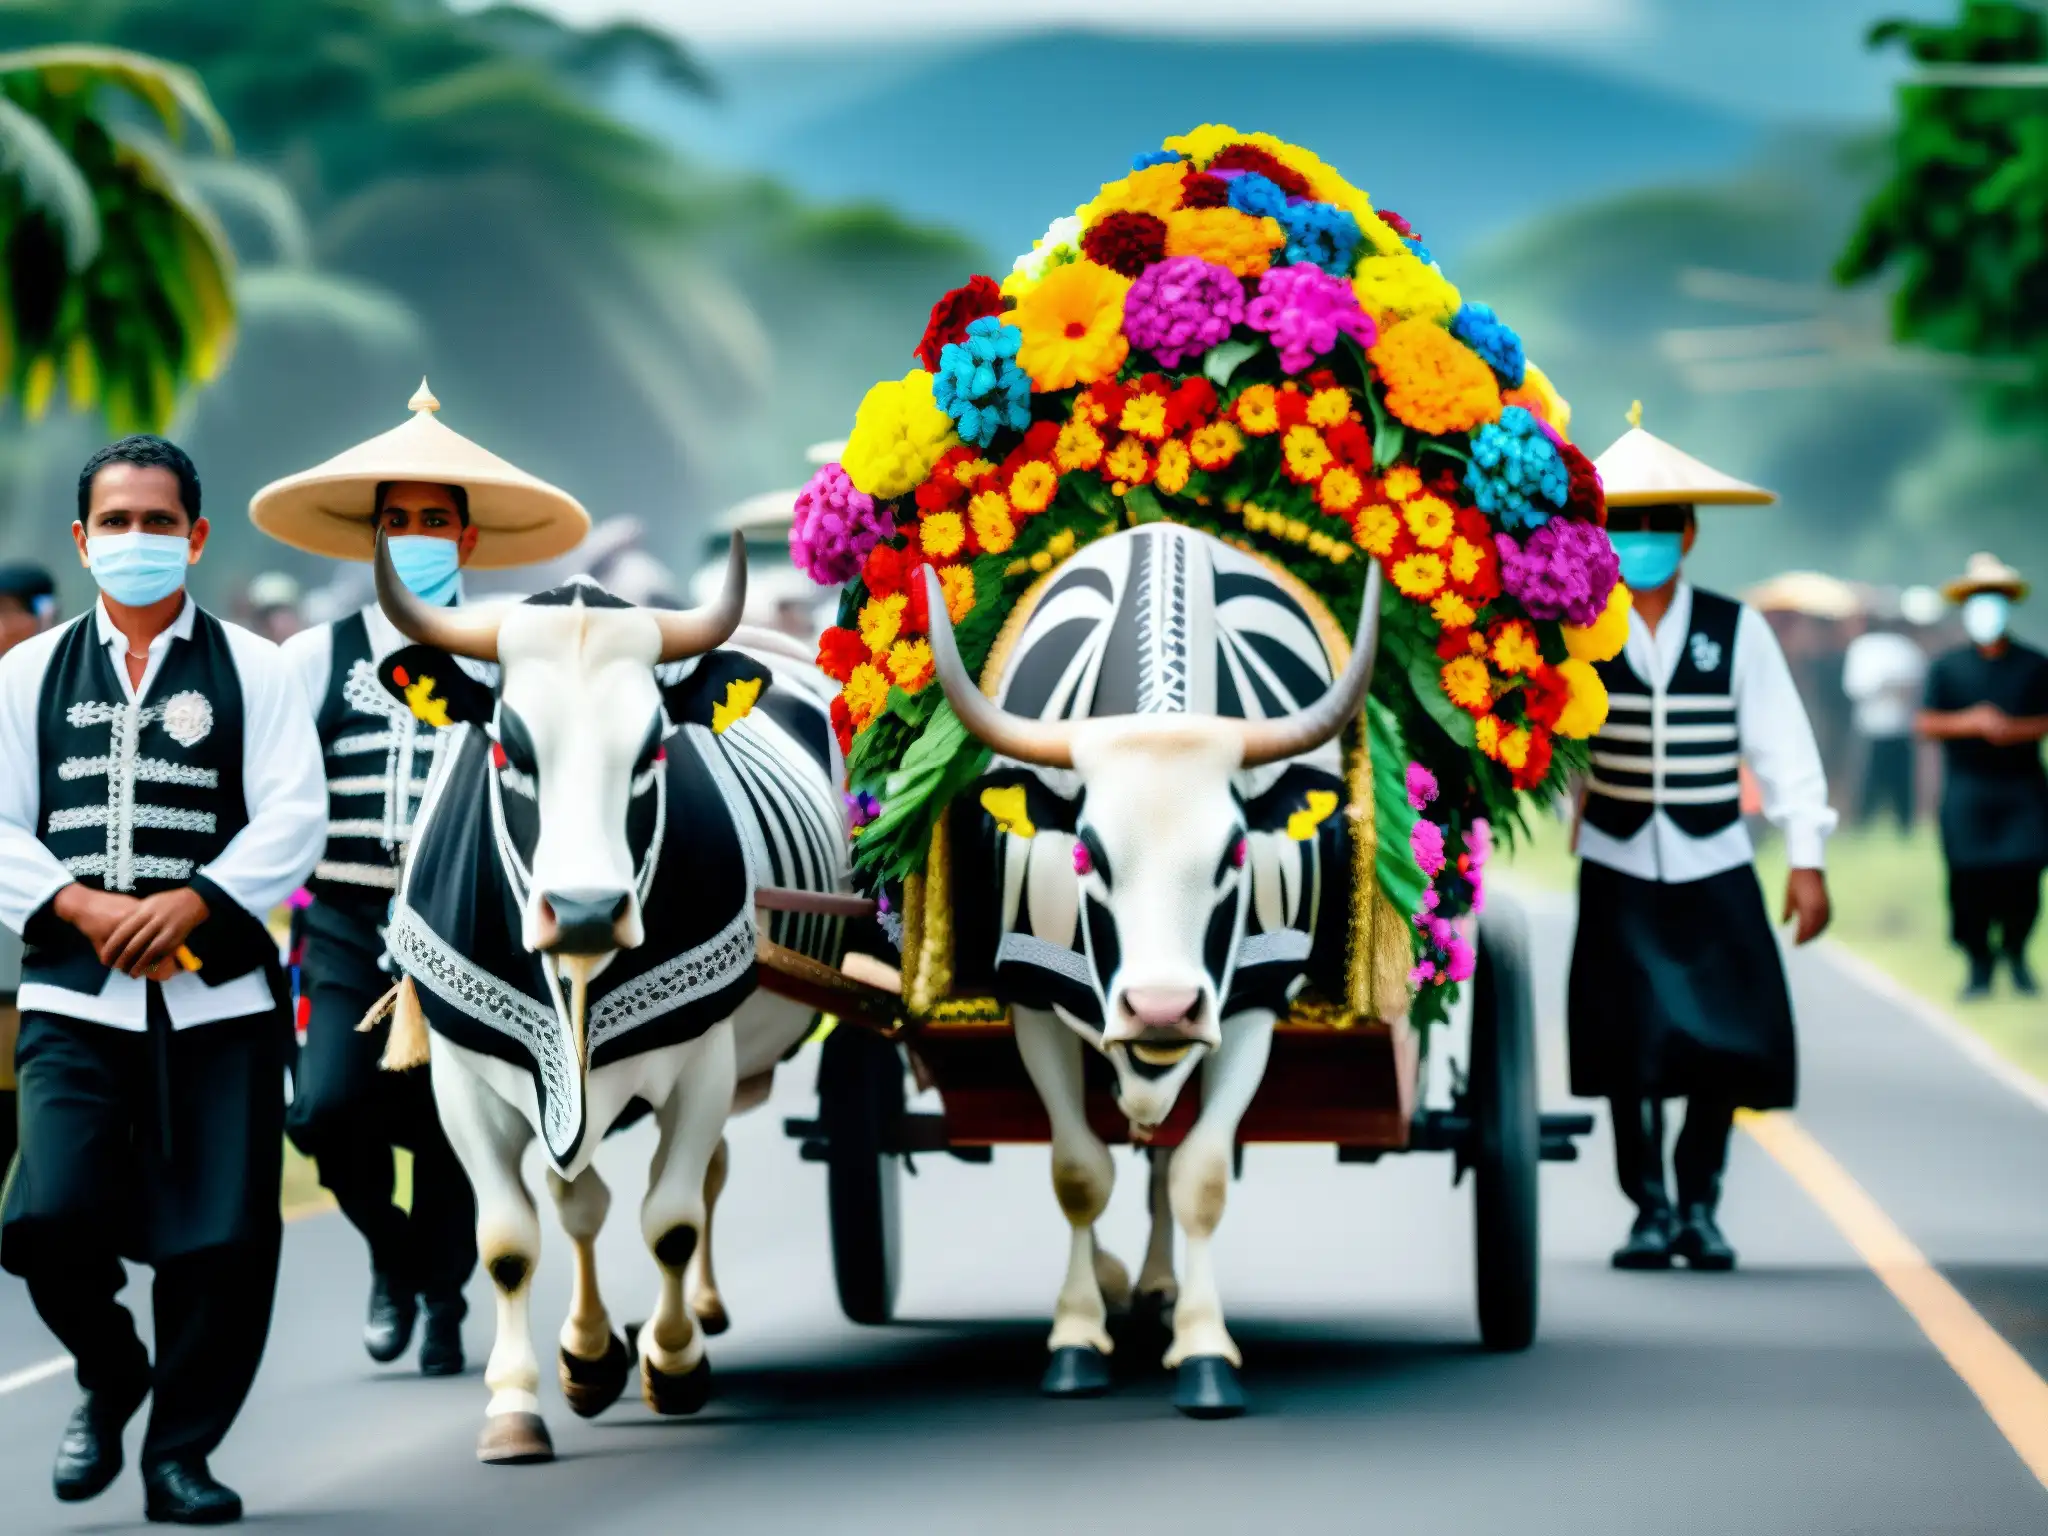 Procesión funeraria tradicional en Centroamérica, con carretón adornado y vestimenta ritual